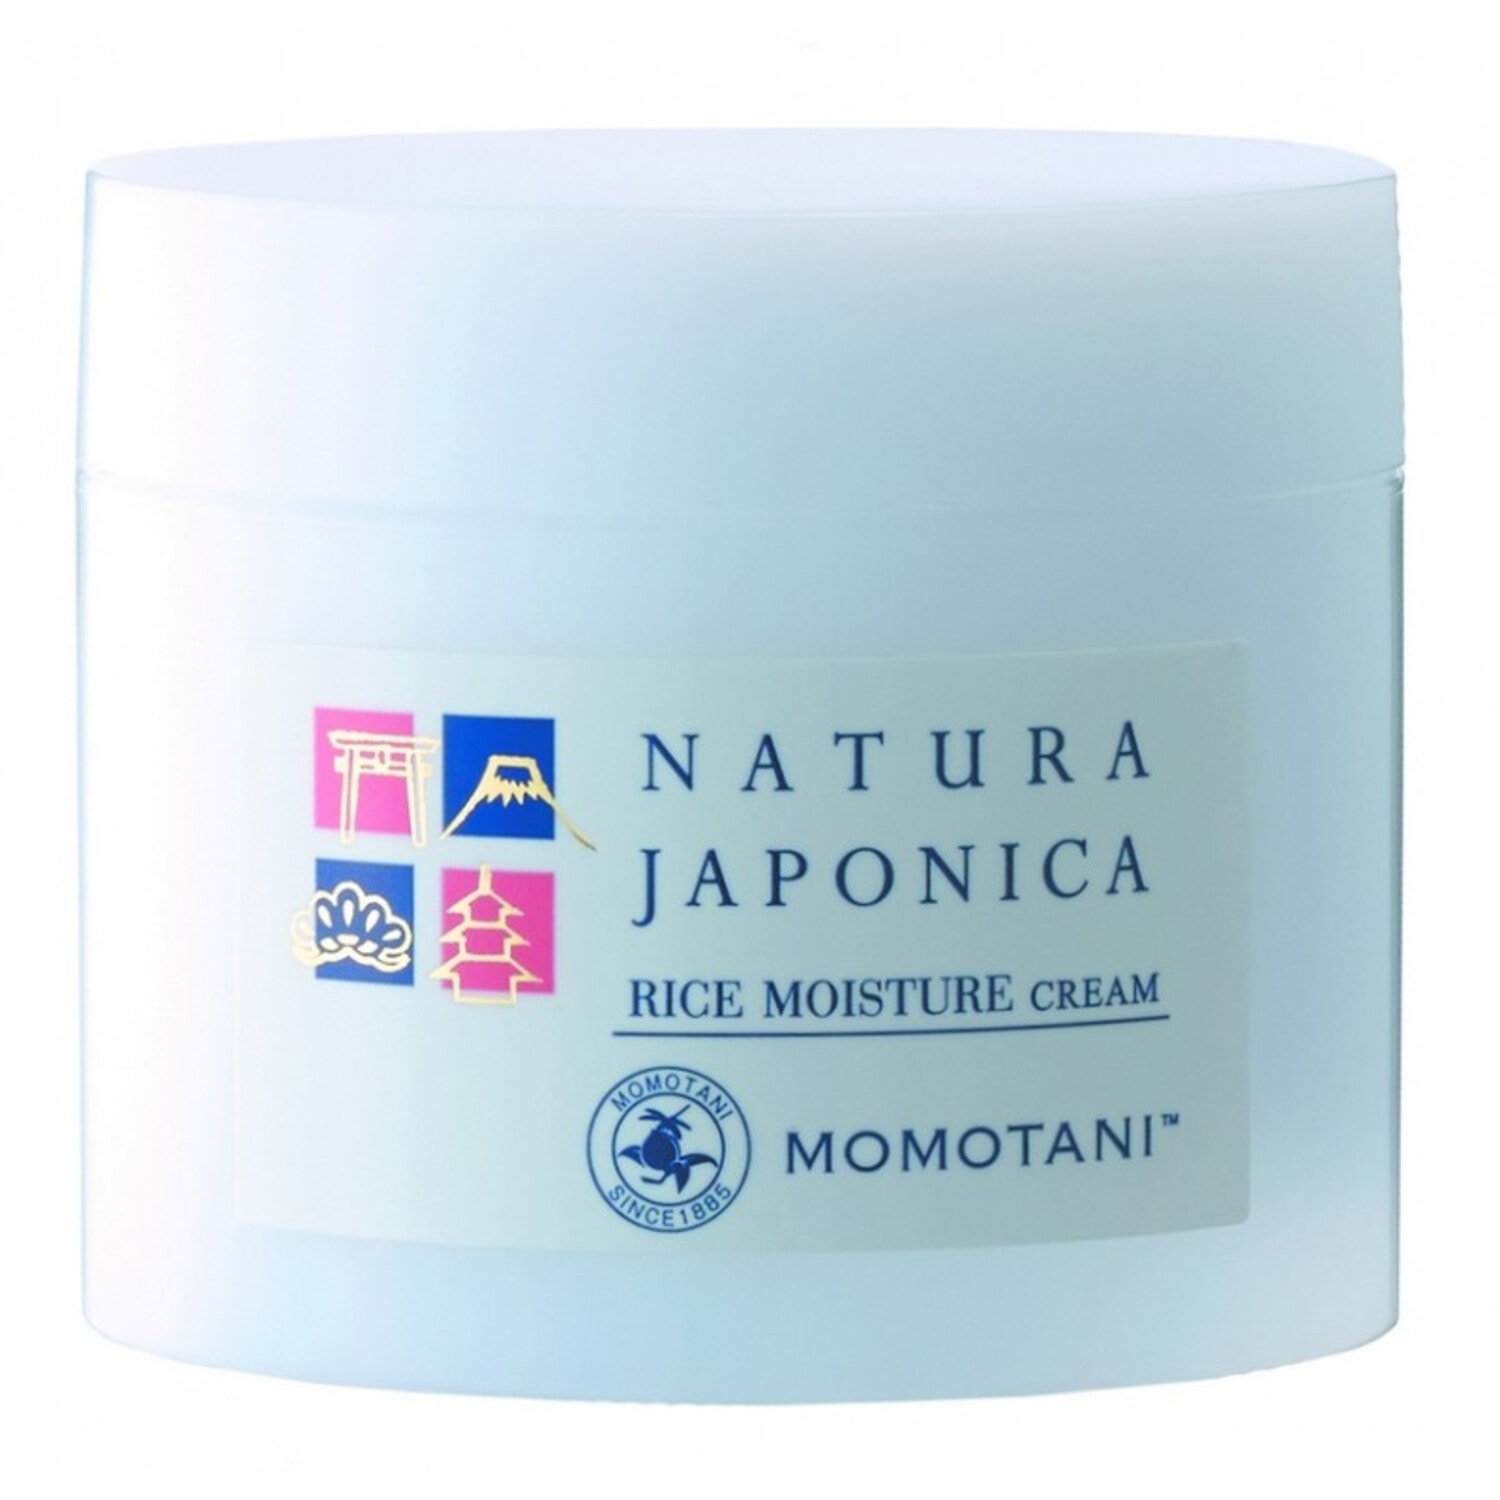 MOMOTANI NJ Rice Moisture Cream Увлажняющий крем с экстрактом ферментированного риса, 48 г. / 806018 (4Т)